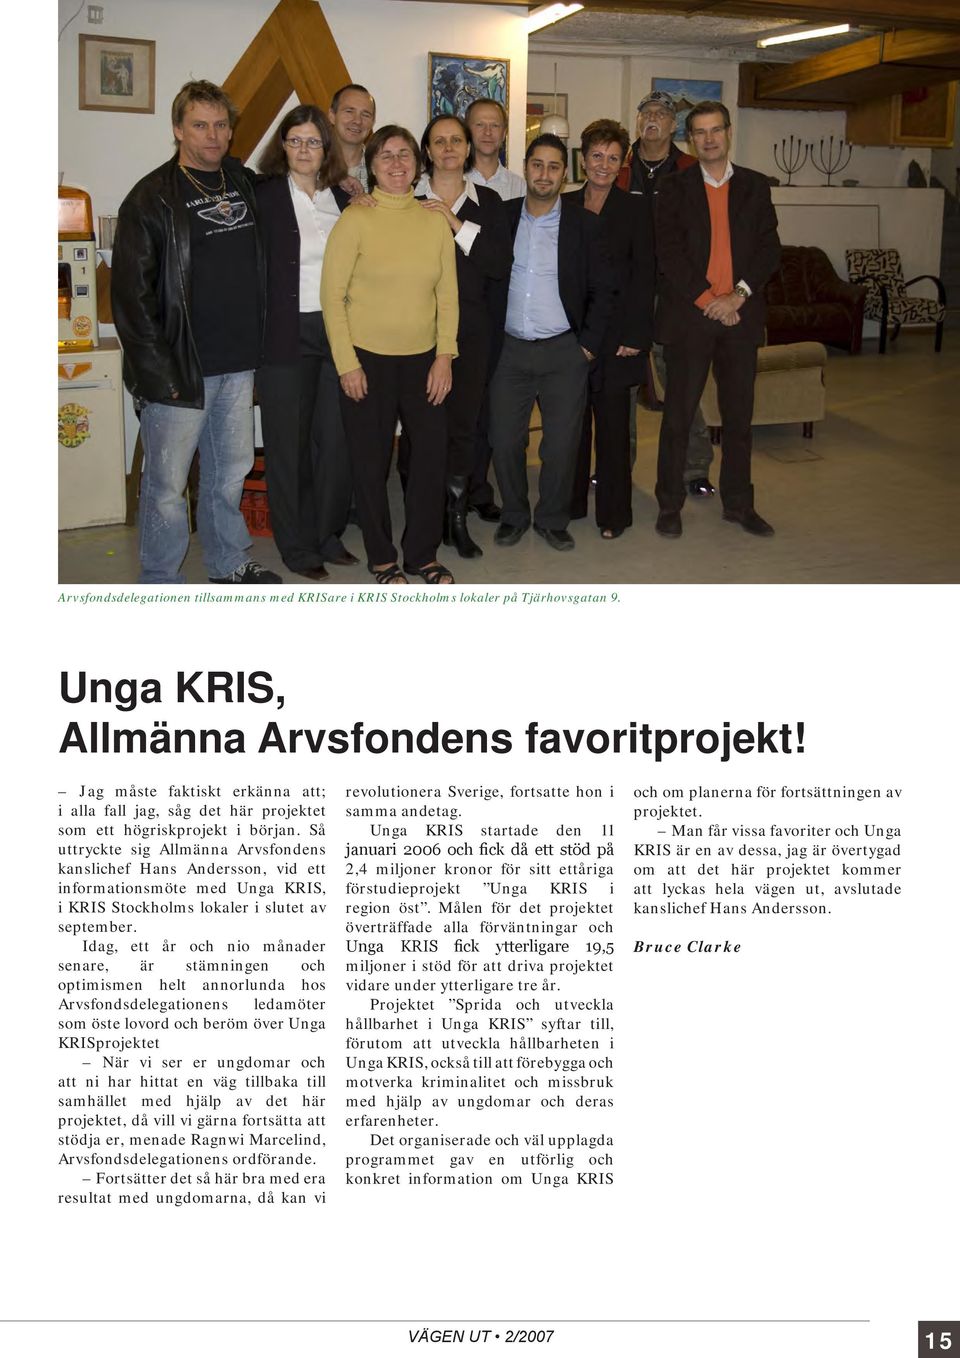 Så uttryckte sig Allmänna Arvsfondens kanslichef Hans Andersson, vid ett informationsmöte med Unga KRIS, i KRIS Stockholms lokaler i slutet av september.